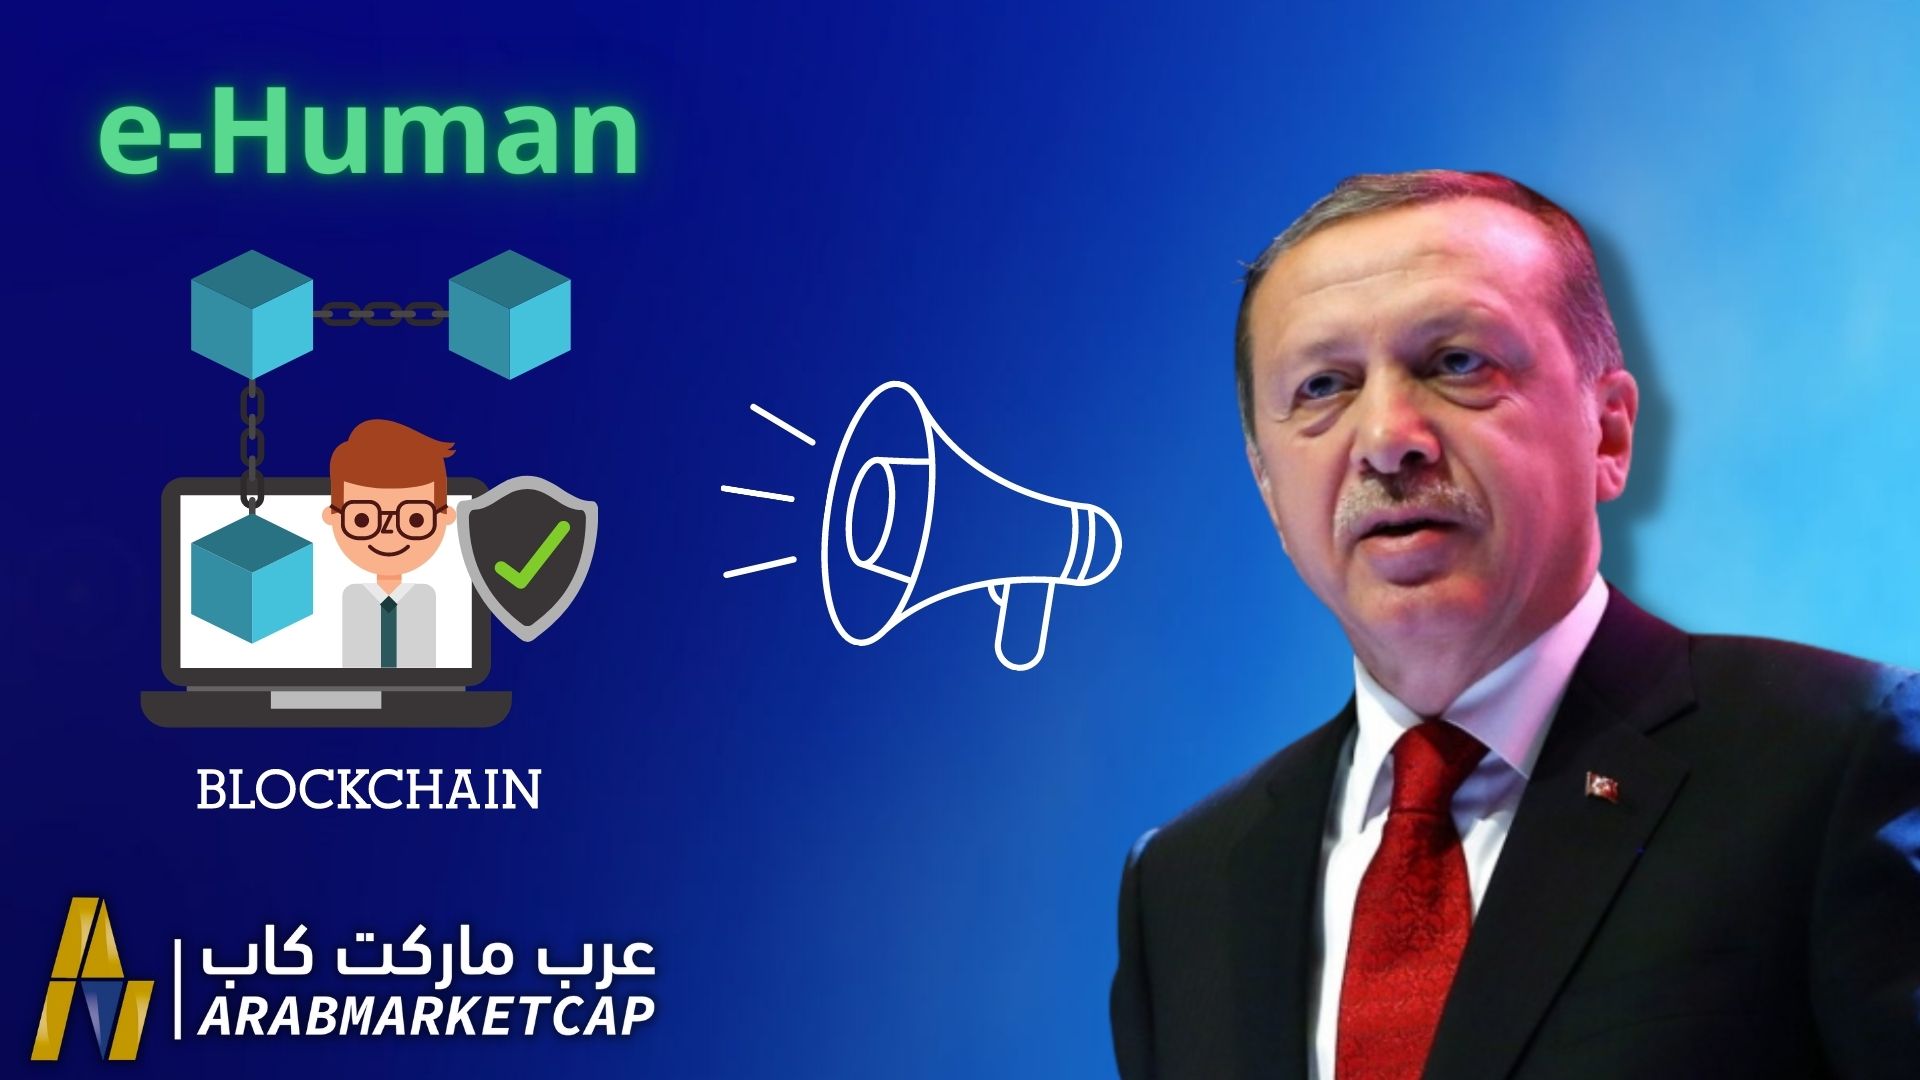 تركيا والبلوكتشين: اعلان الرئيس التركي عن مشروع البلوكتشين " e-Human"